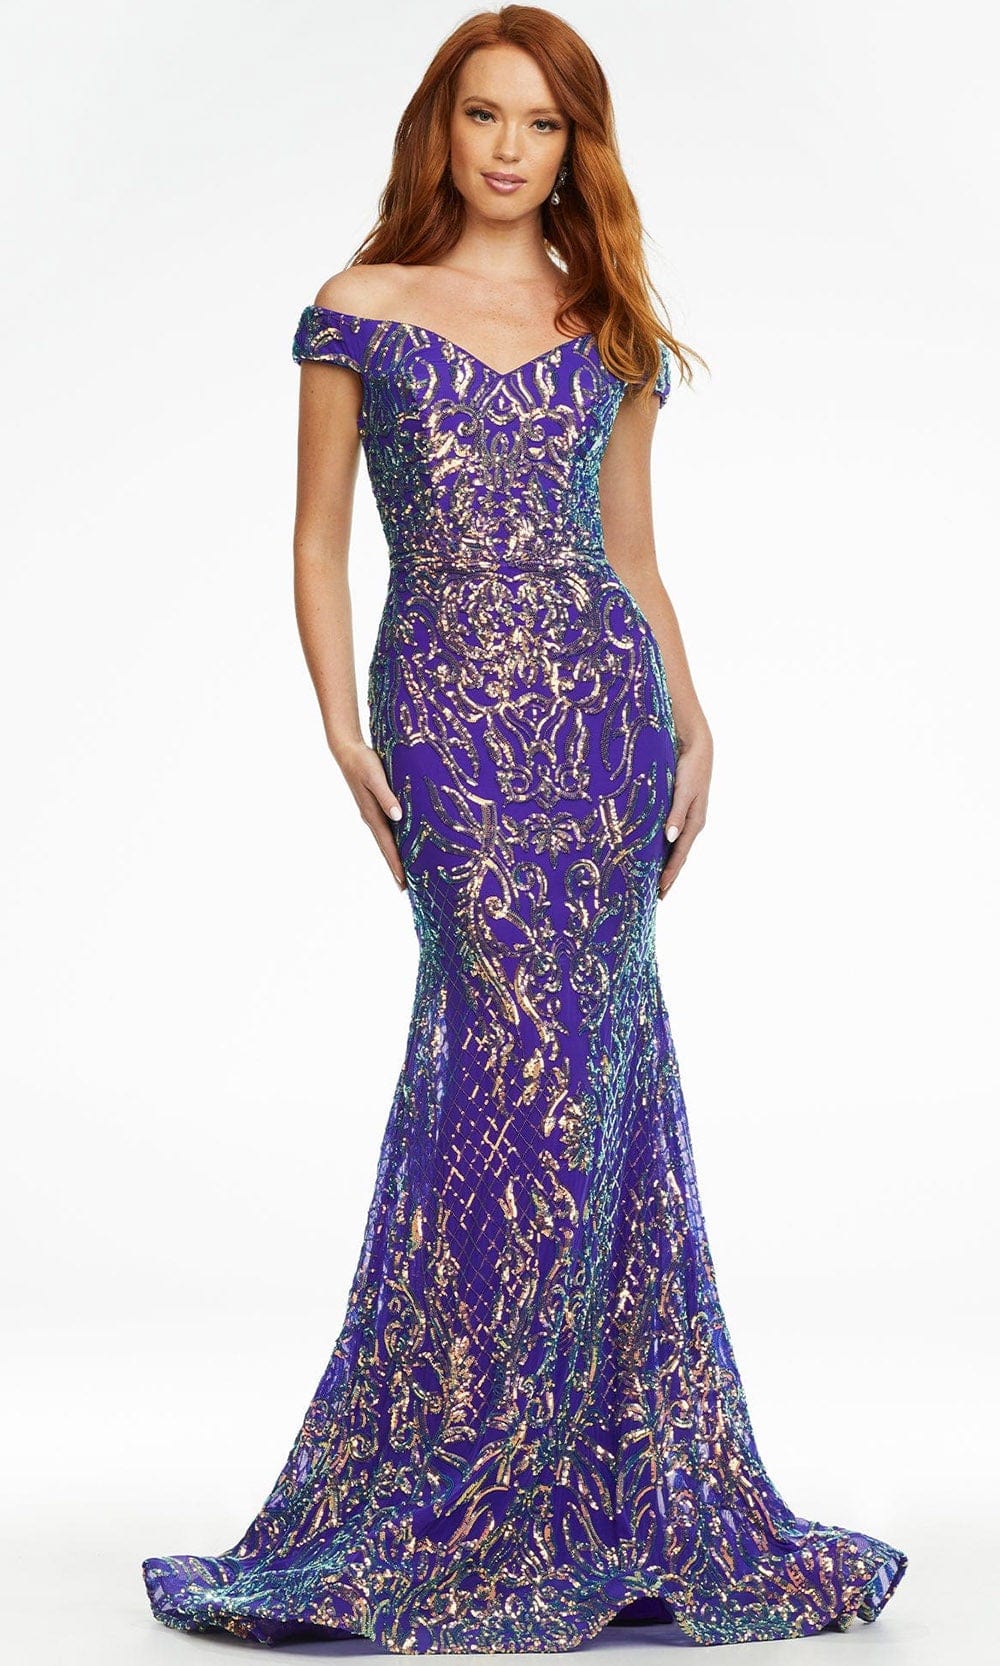 Ashley Lauren - 11115 Intricate Sequin Gown
